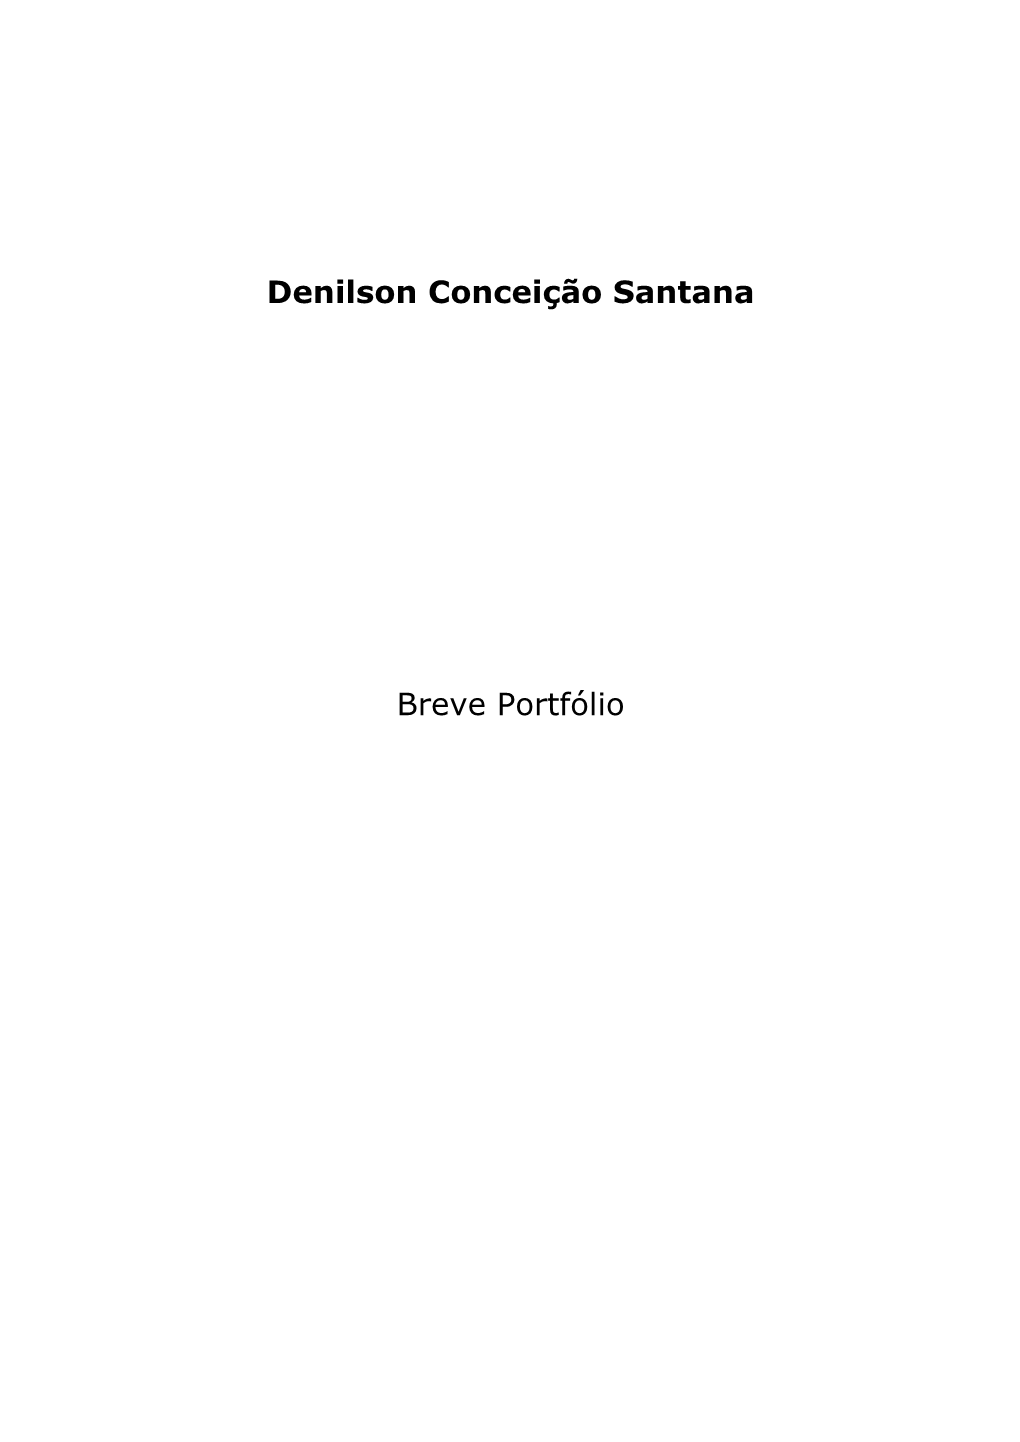 Denilson Conceição Santana Breve Portfólio